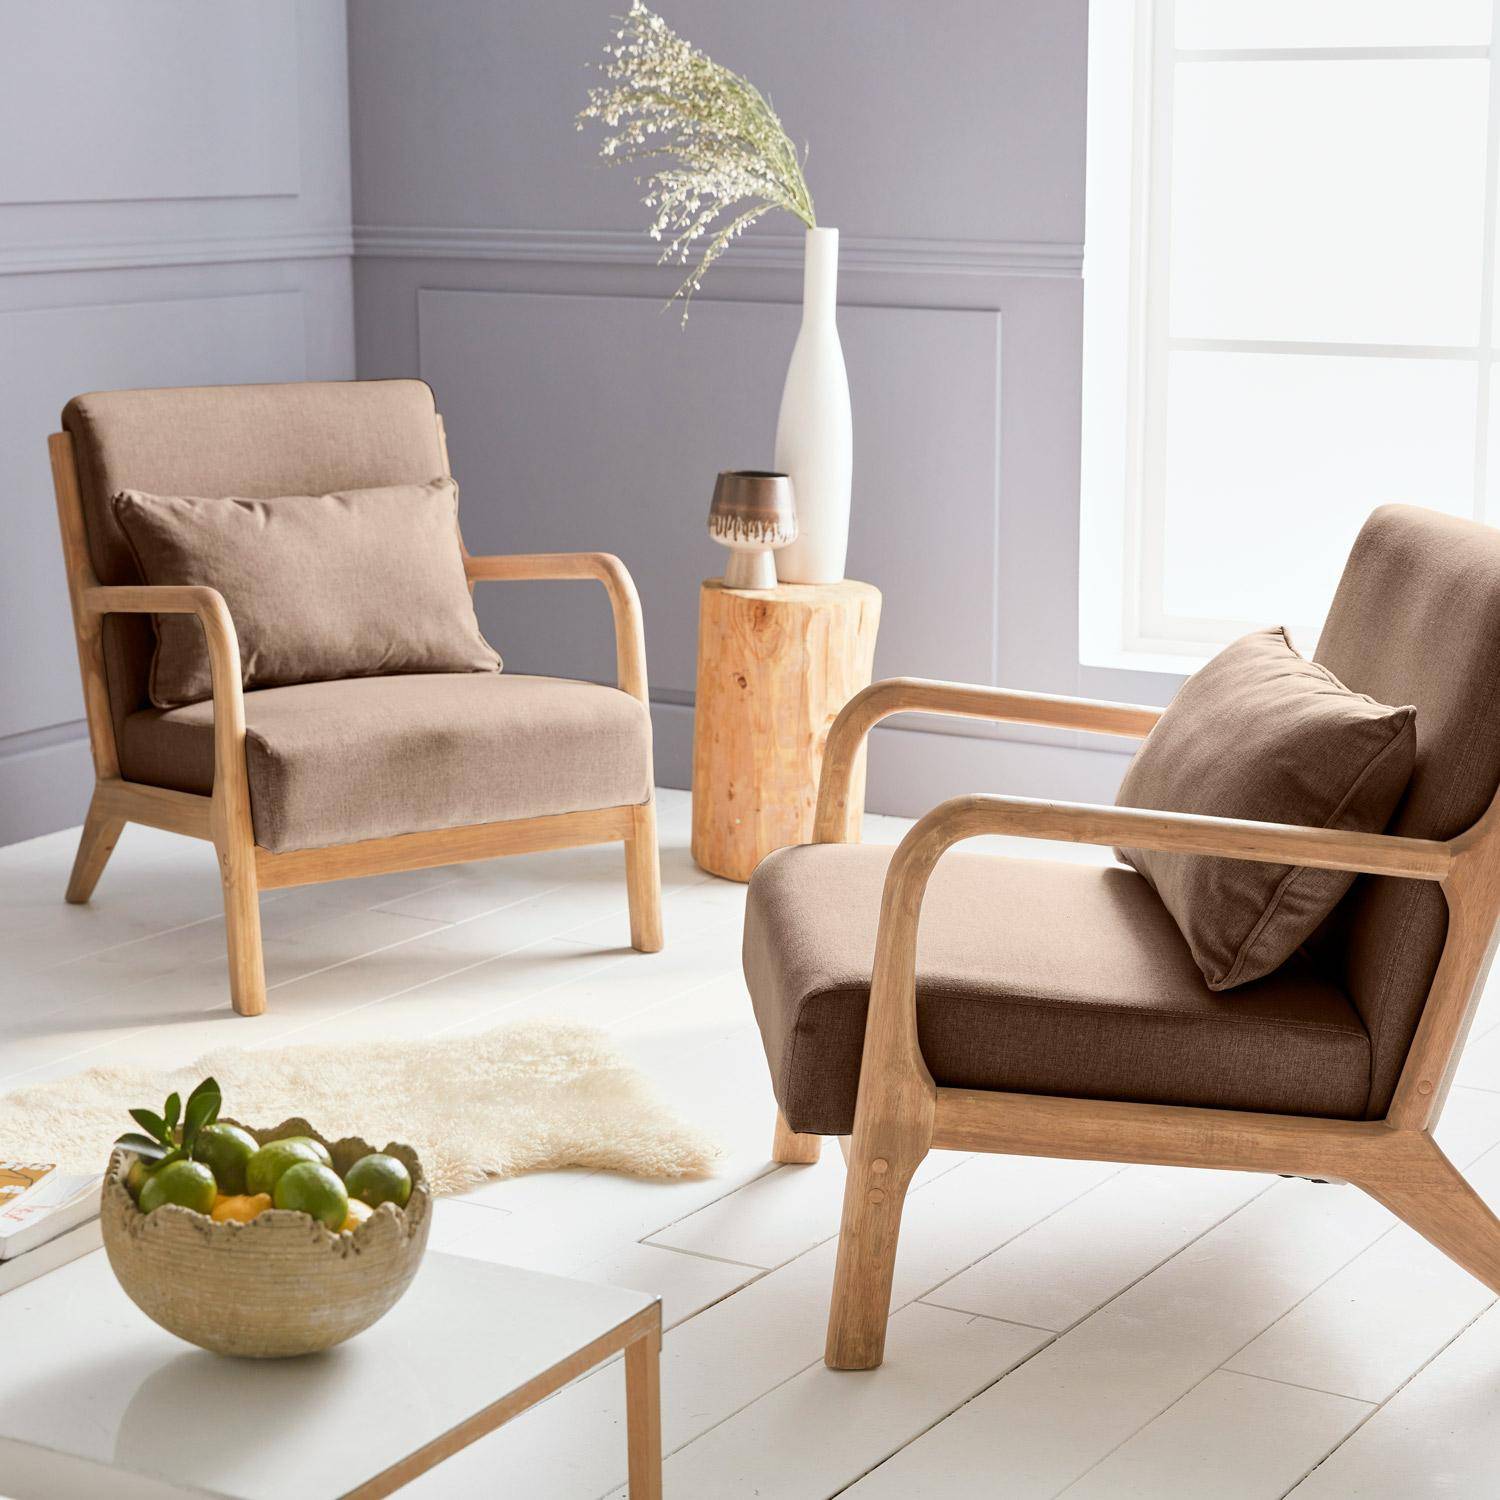 Fauteuil design marron en bois et tissu, 1 place droit fixe, pieds compas scandinave, structure en bois solide, assise confortable  Photo2